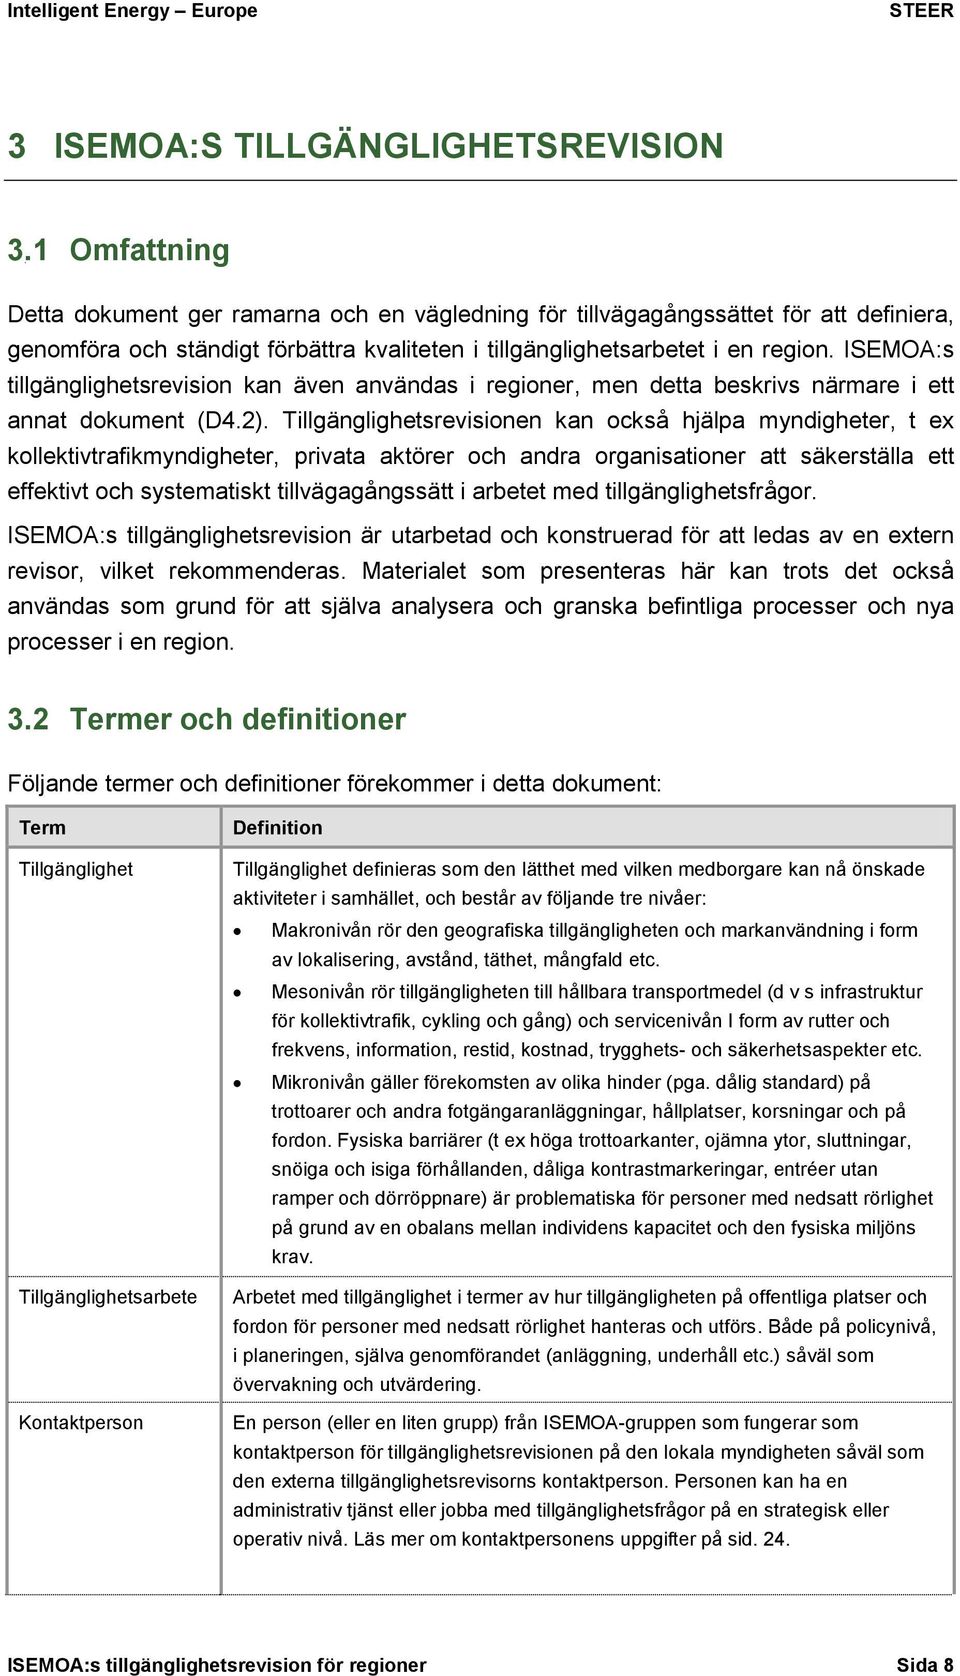 ISEMOA:s tillgänglighetsrevision kan även användas i regioner, men detta beskrivs närmare i ett annat dokument (D4.2).